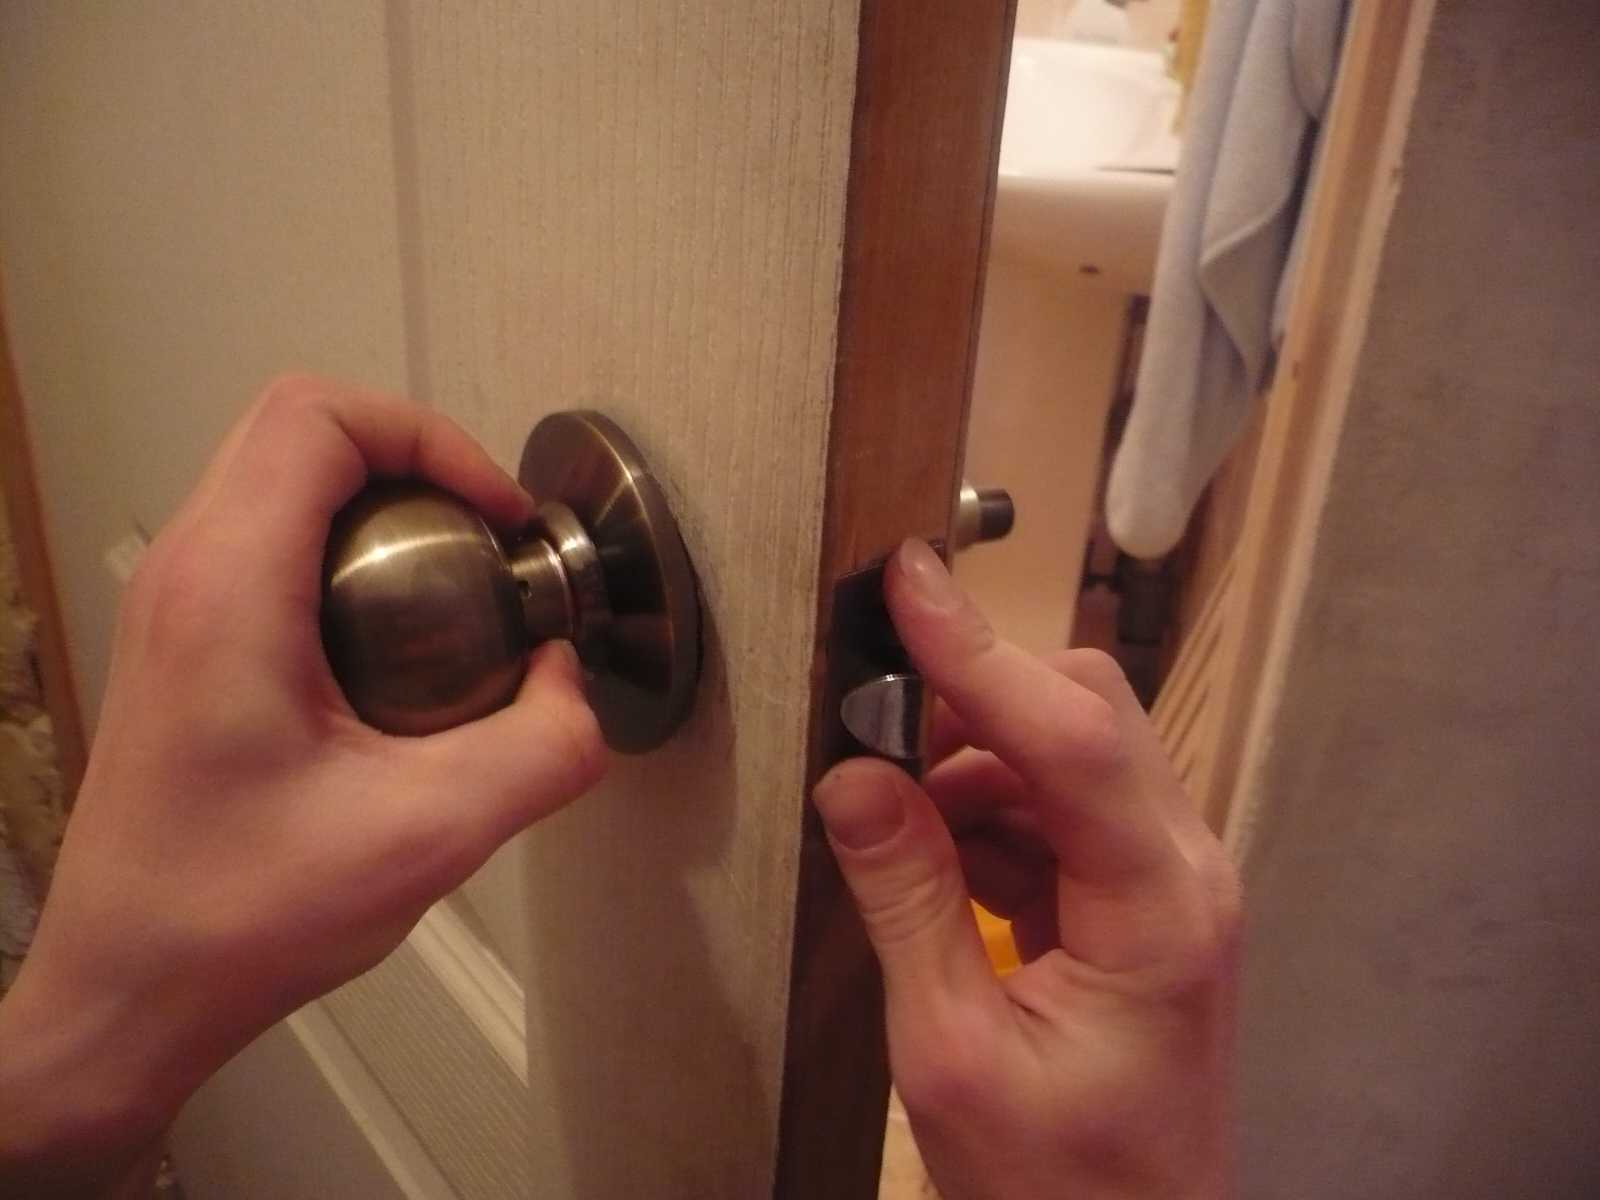 Как установить дверную ручку на входную дверь своими руками